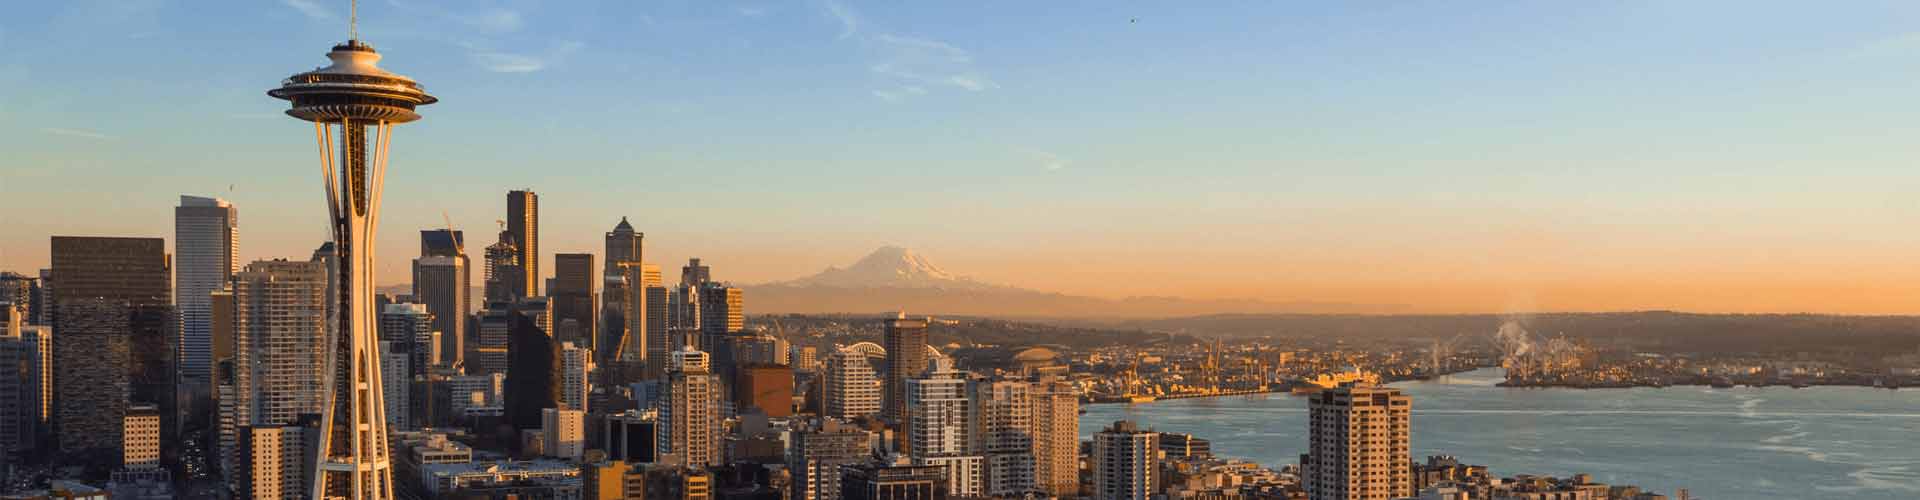 Seattle (zip 98199), WA